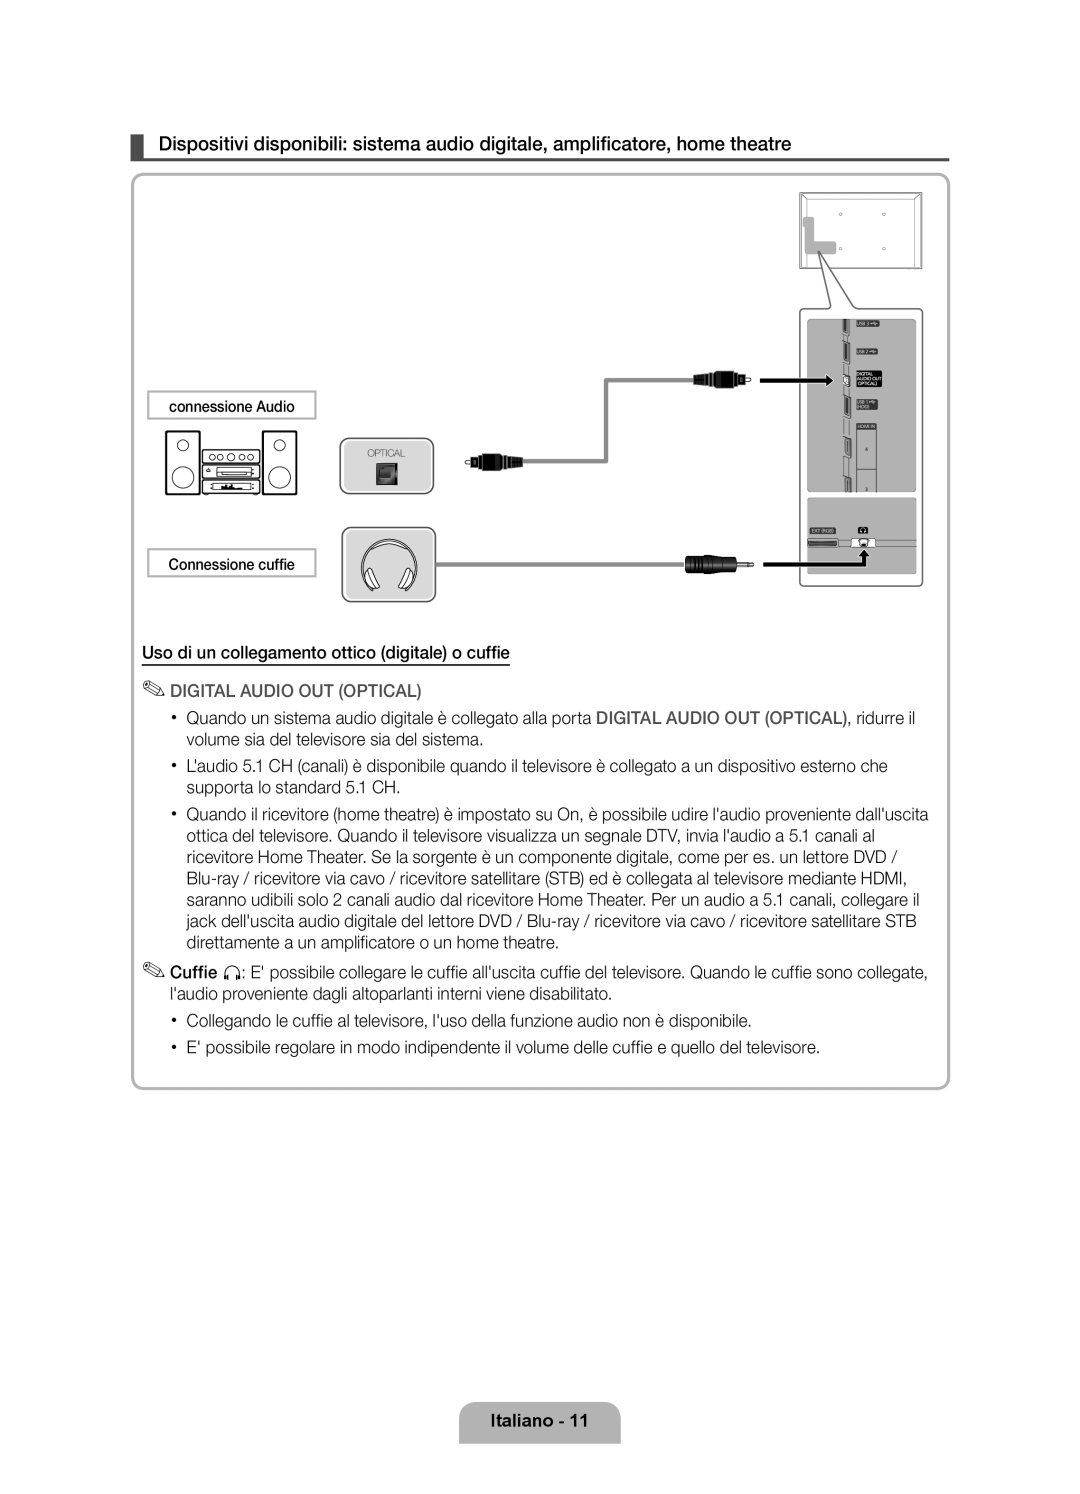 Samsung UE46D6000TPXZT manual Uso di un collegamento ottico digitale o cuffie, Digital Audio Out Optical, Italiano 